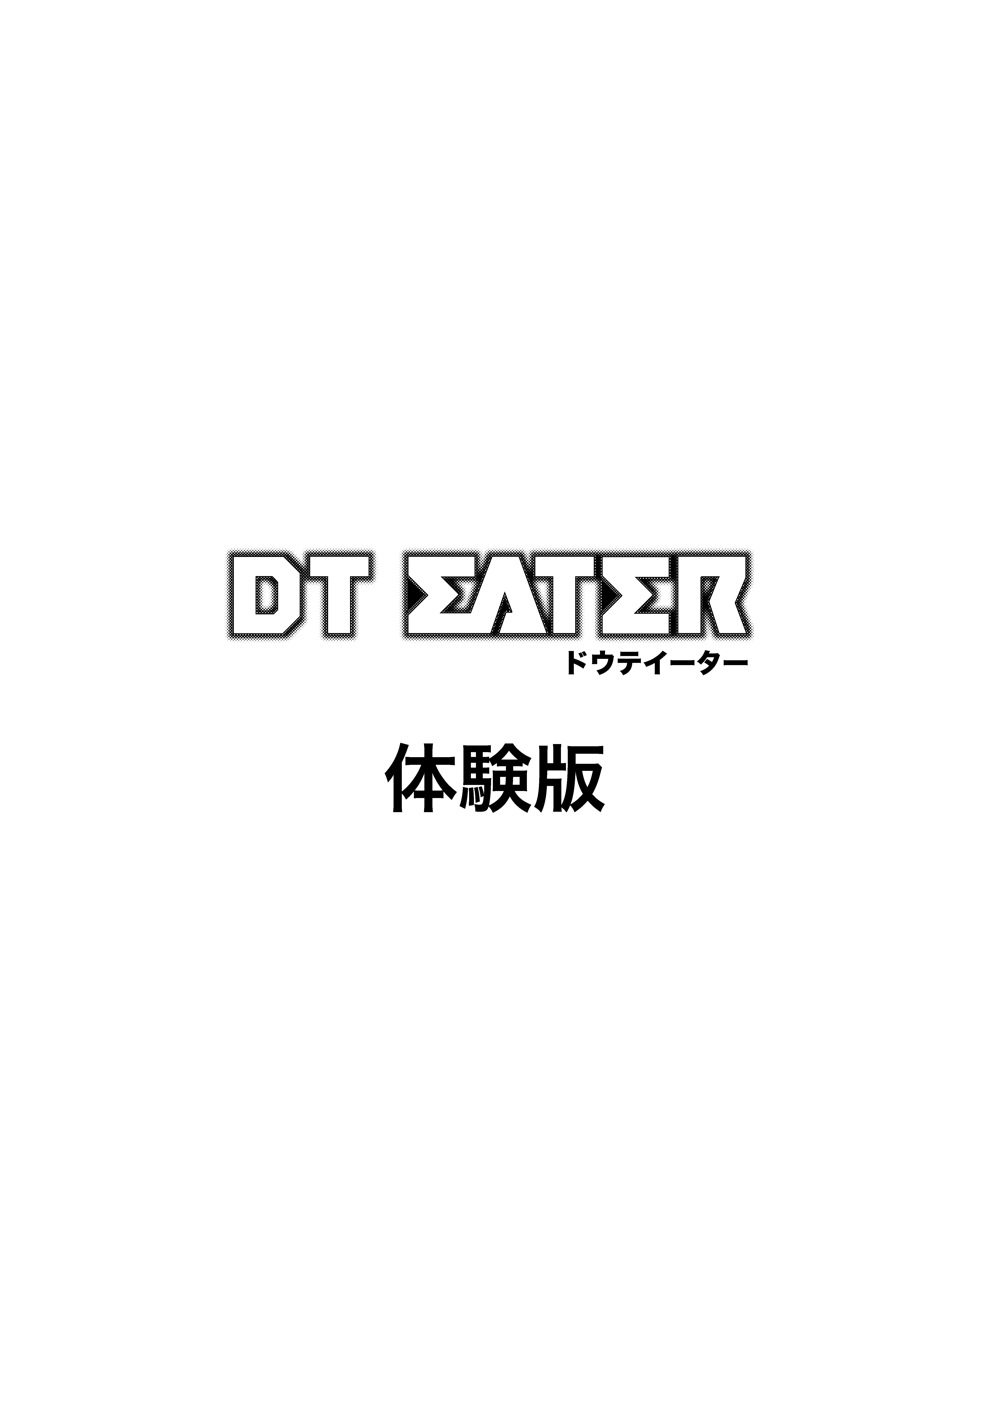 [Circle Roman Hikou (T-Heaven)] DT EATER (God Eater) [サークル浪漫飛行] DT EATER